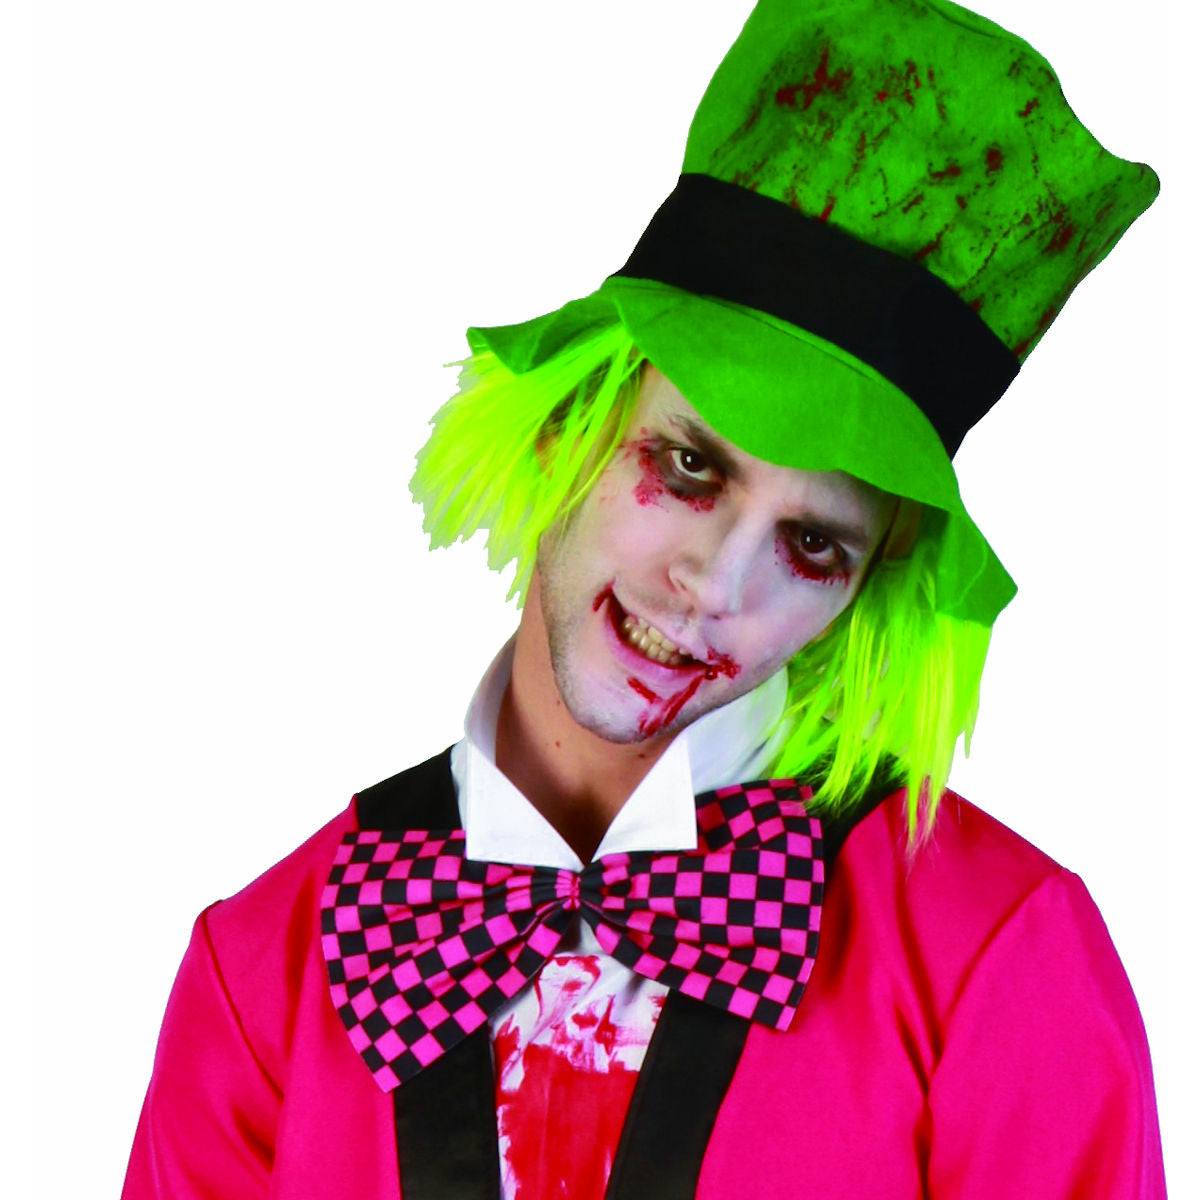 Jilted Jester Clown Men's Costume Fun Halloween Fancy Dress Costume